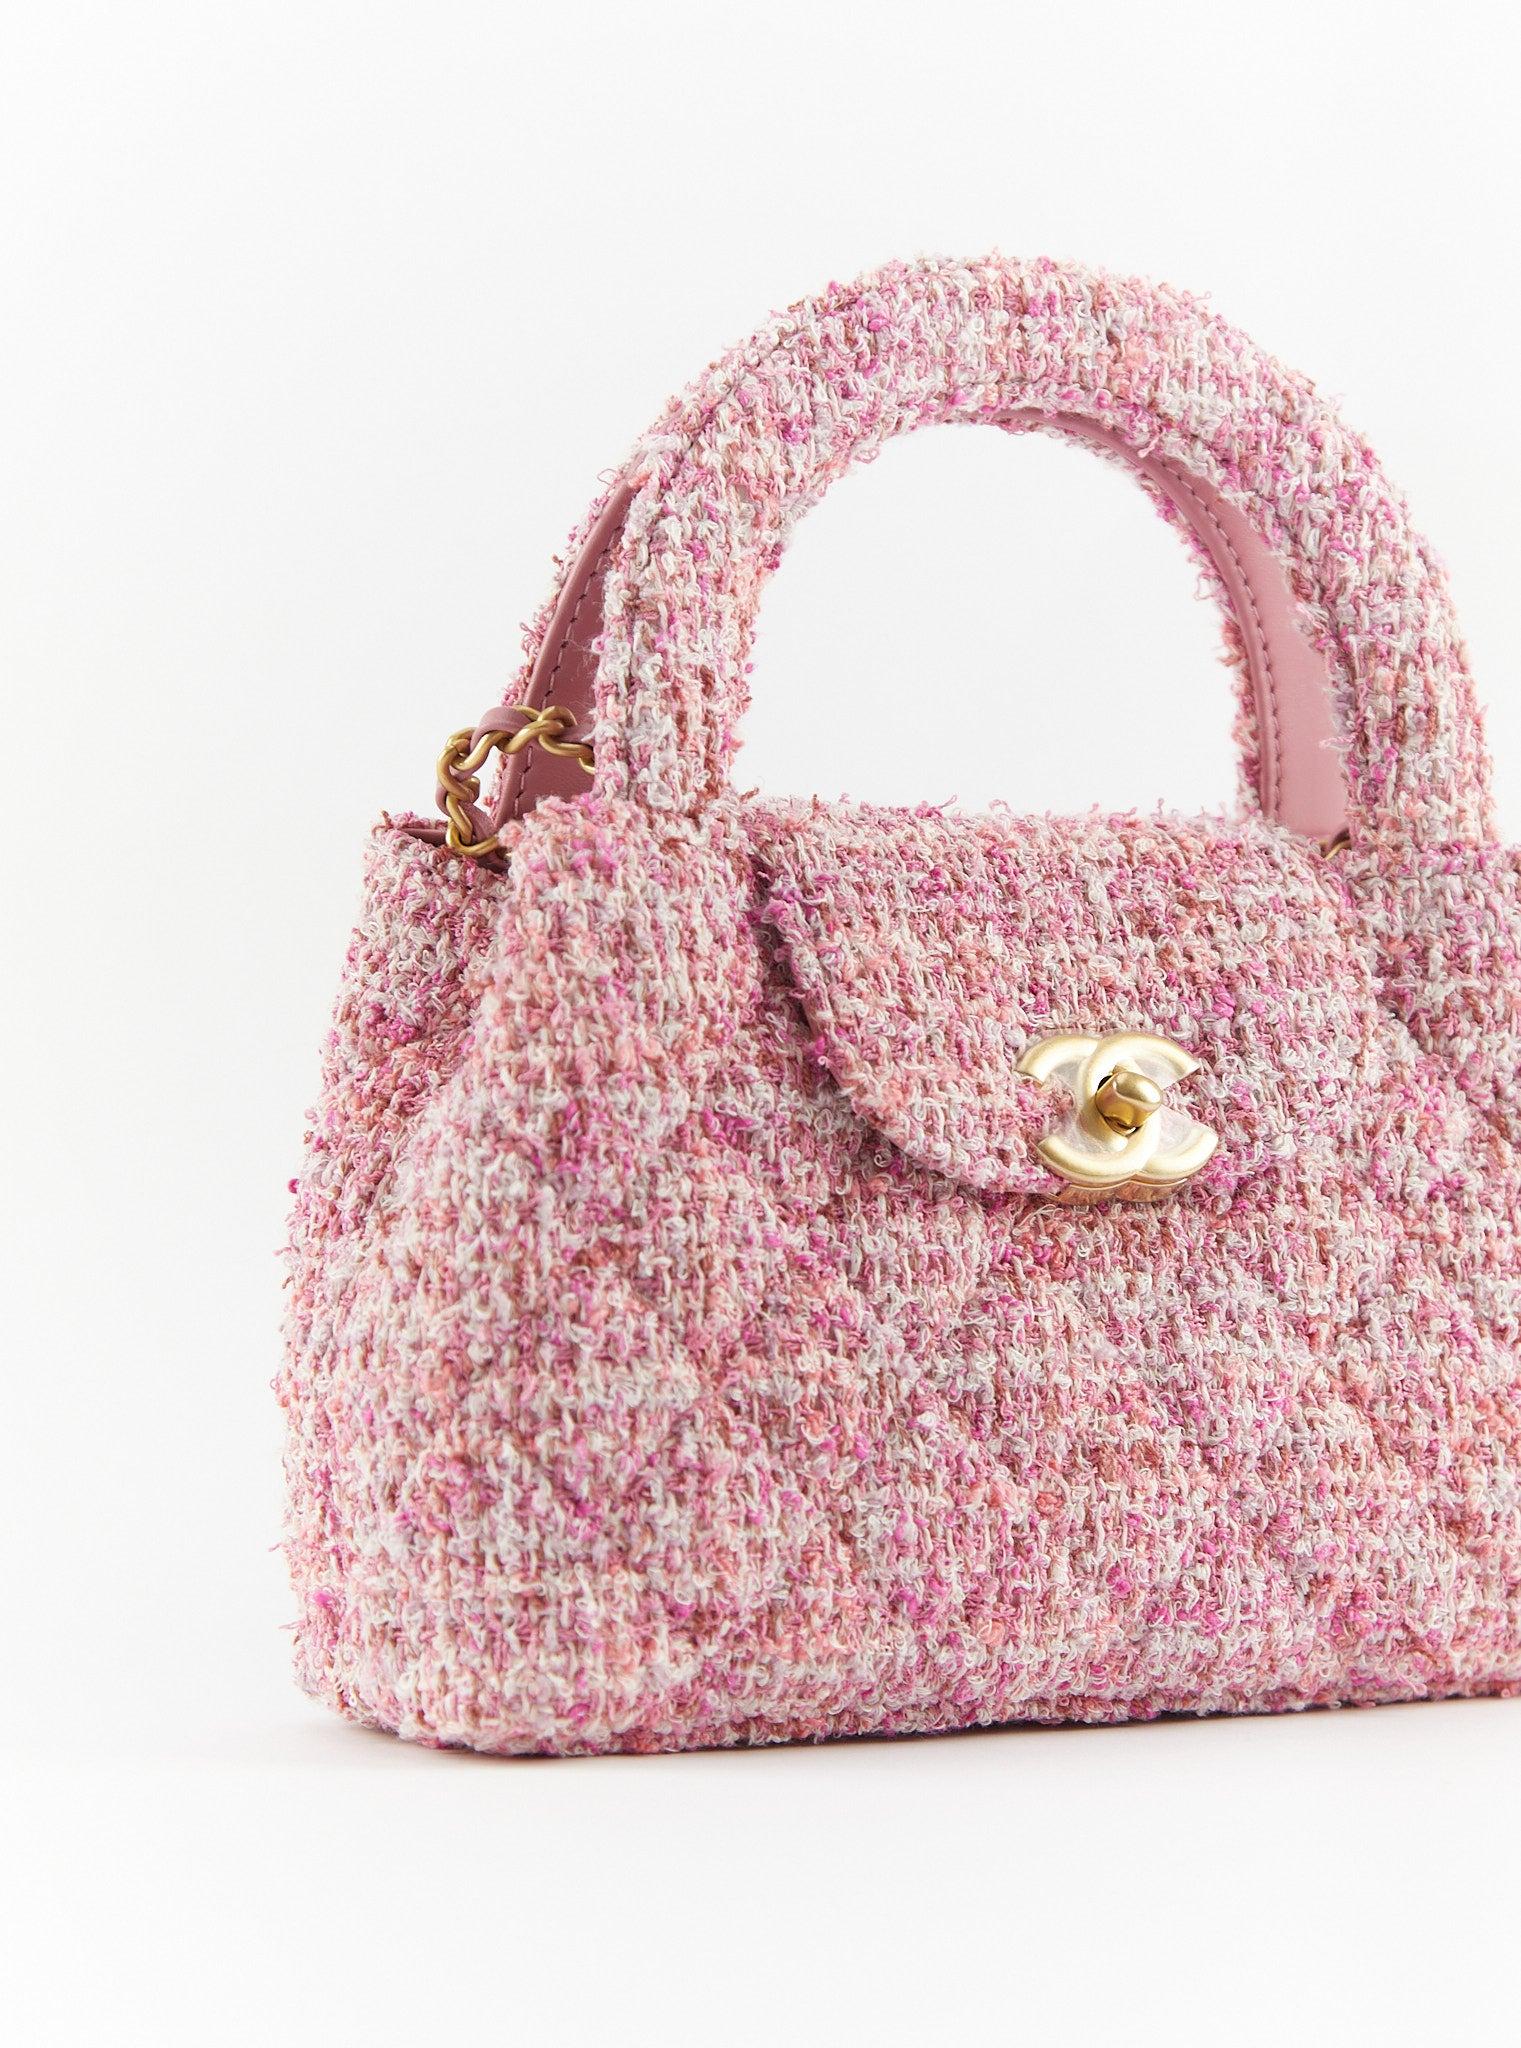 Petit sac Kelly de Chanel en rose et écru

Tweed avec quincaillerie en or

Accompagné de : Boîte Chanel, sac à poussière et jeton d'authenticité

Dimensions : H 17 x L 25 x P 8cm